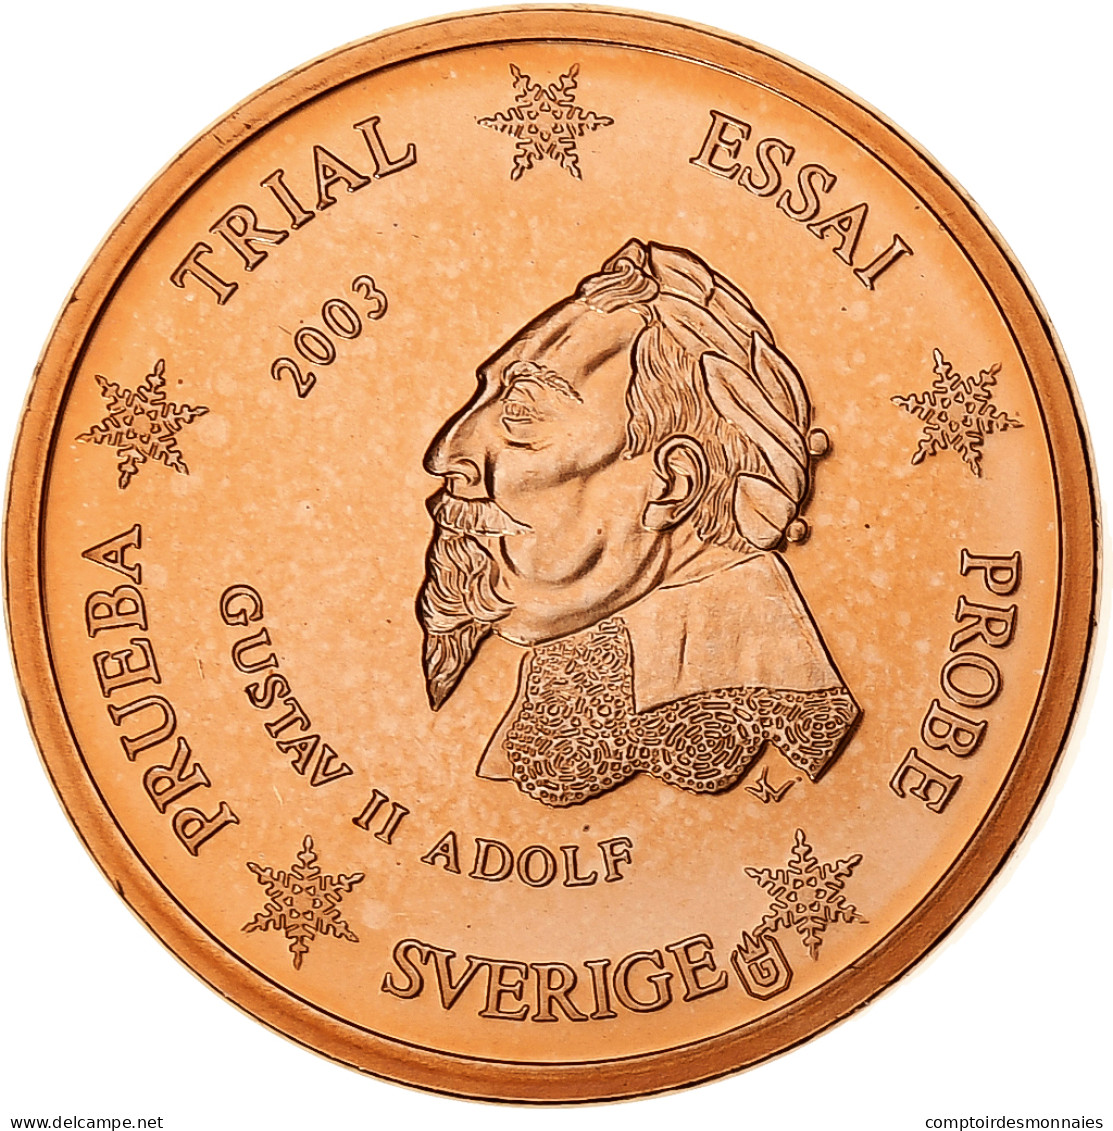 Suède, Euro Cent, Fantasy Euro Patterns, Essai-Trial, 2003, Cuivre Plaqué - Essais Privés / Non-officiels